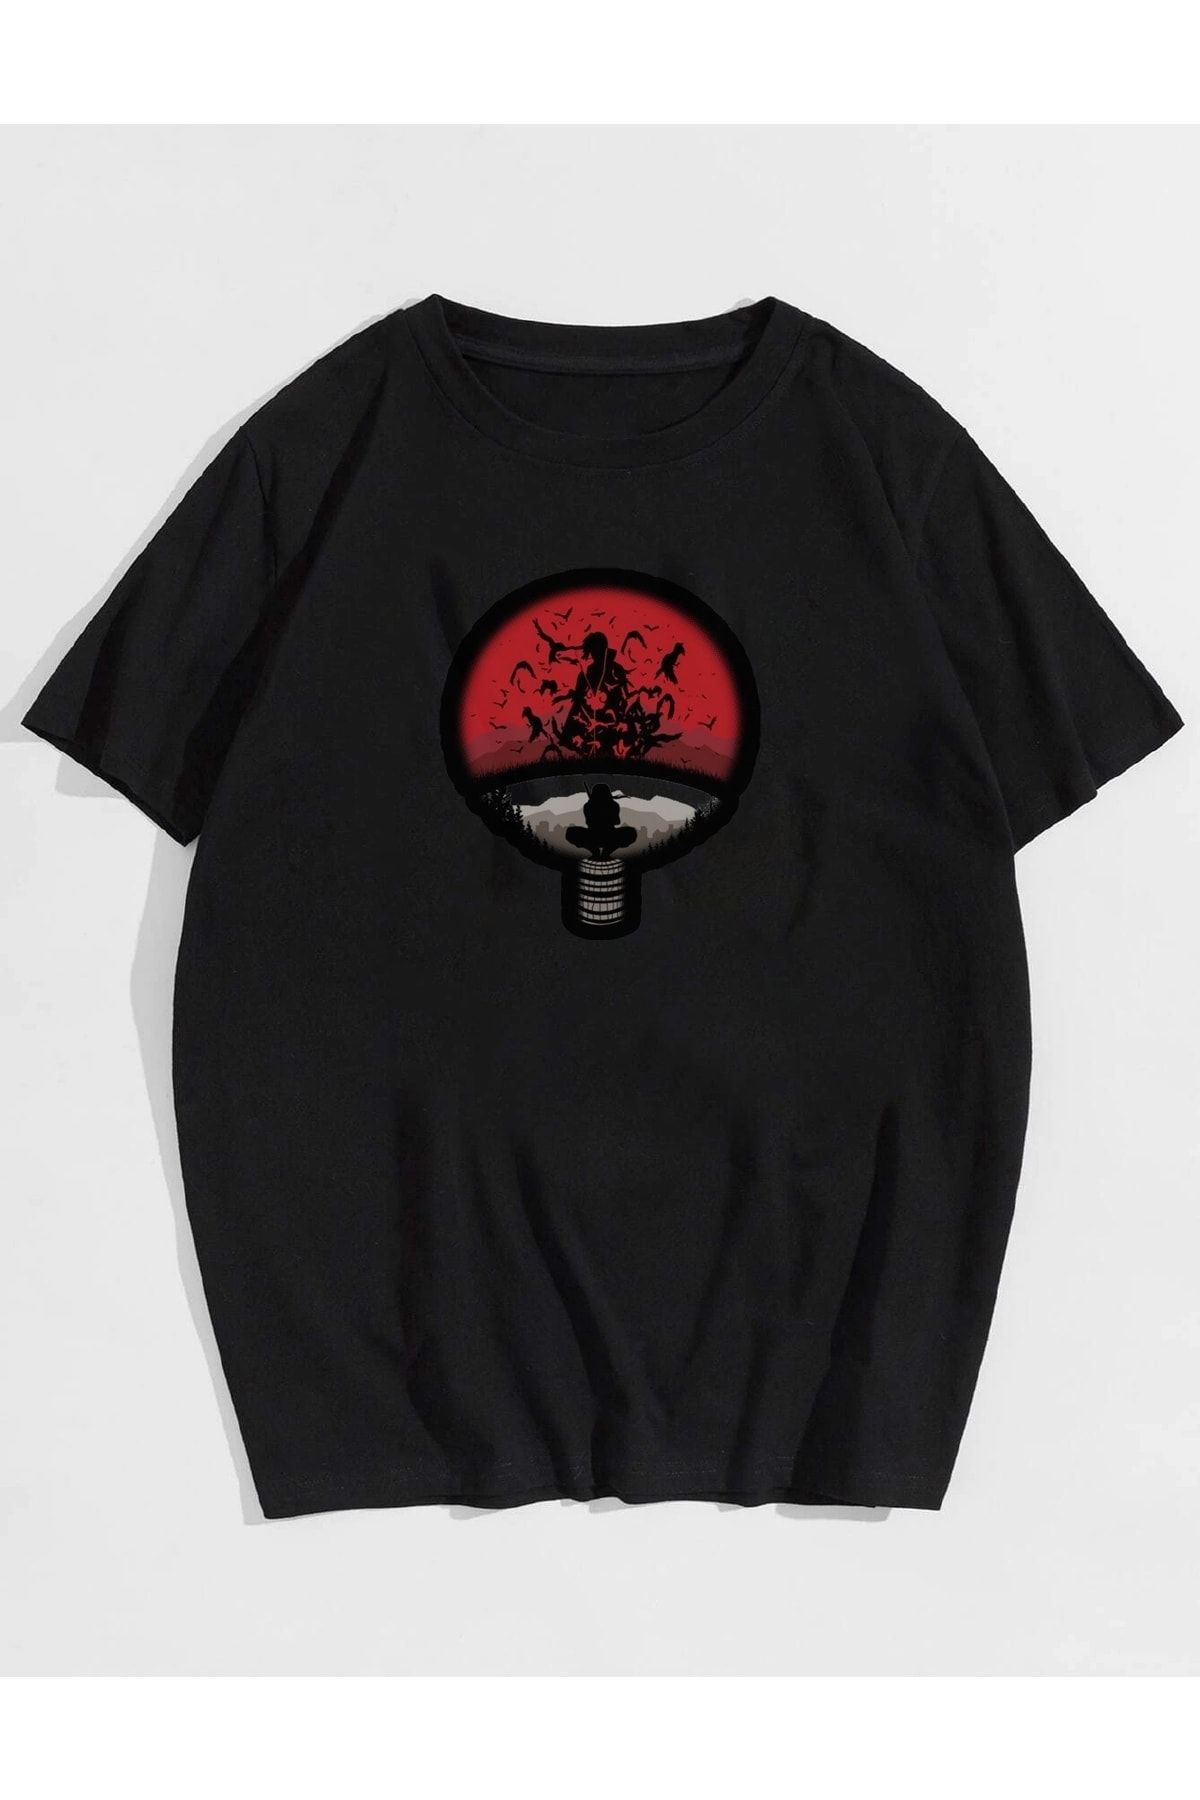 Deocept Unisex Naruto Samurai Itachi Baskılı Oversize T-shirt